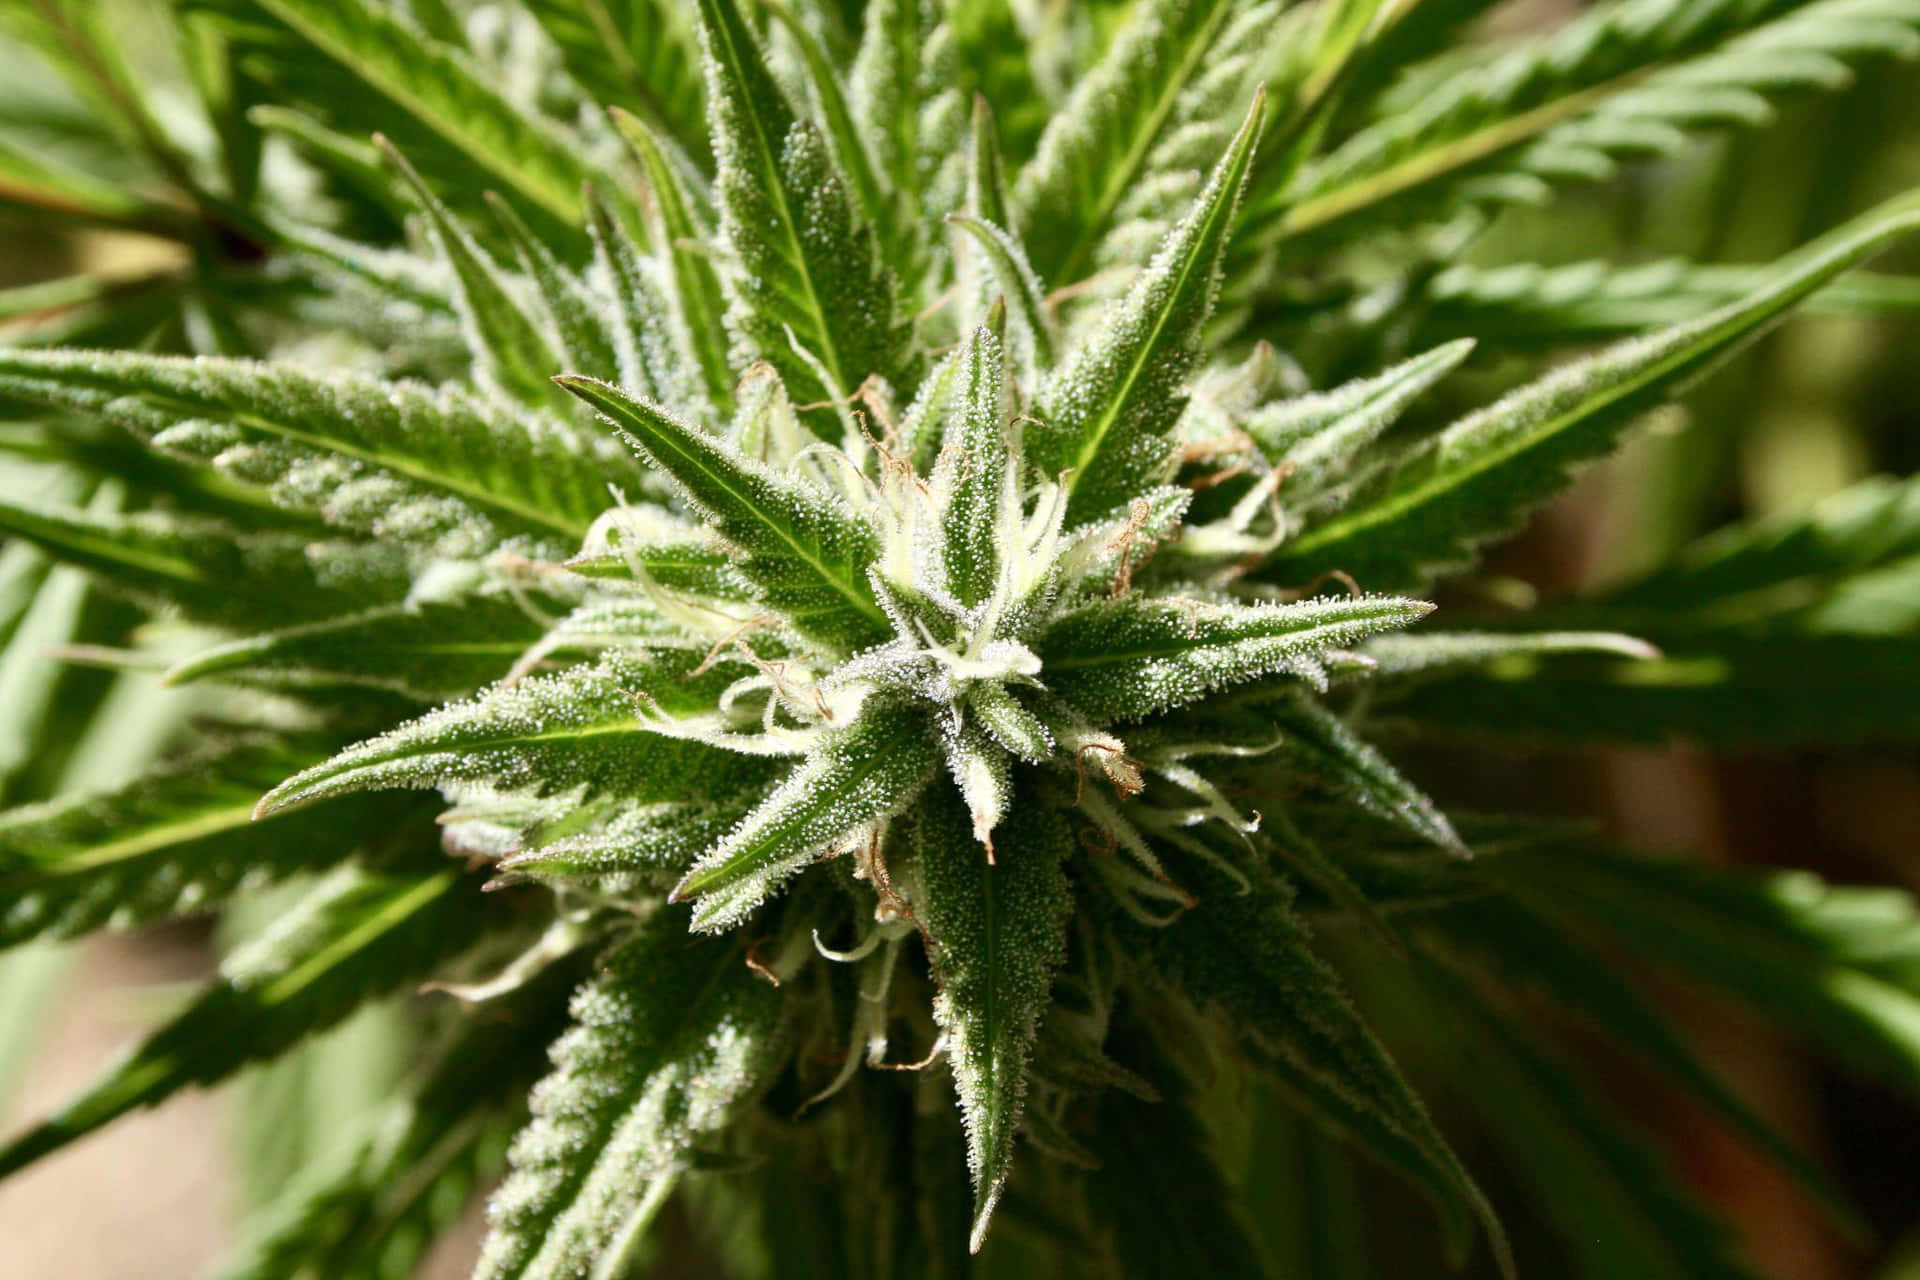 Enbild På En Cannabisplantagérd.